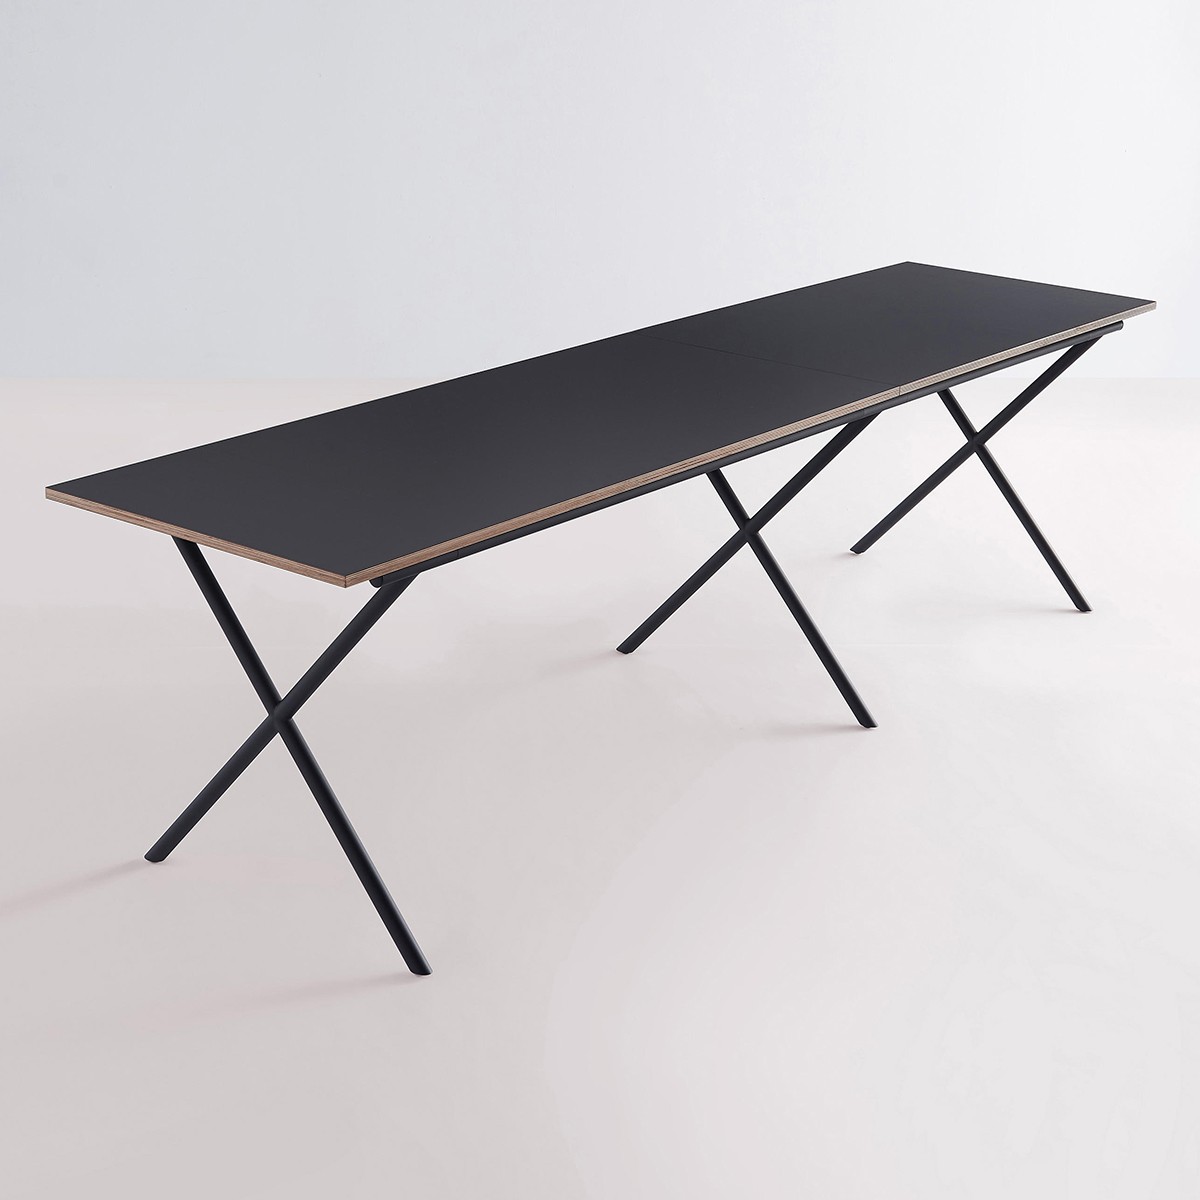 Erweiterung Tisch ITO 120x70cm